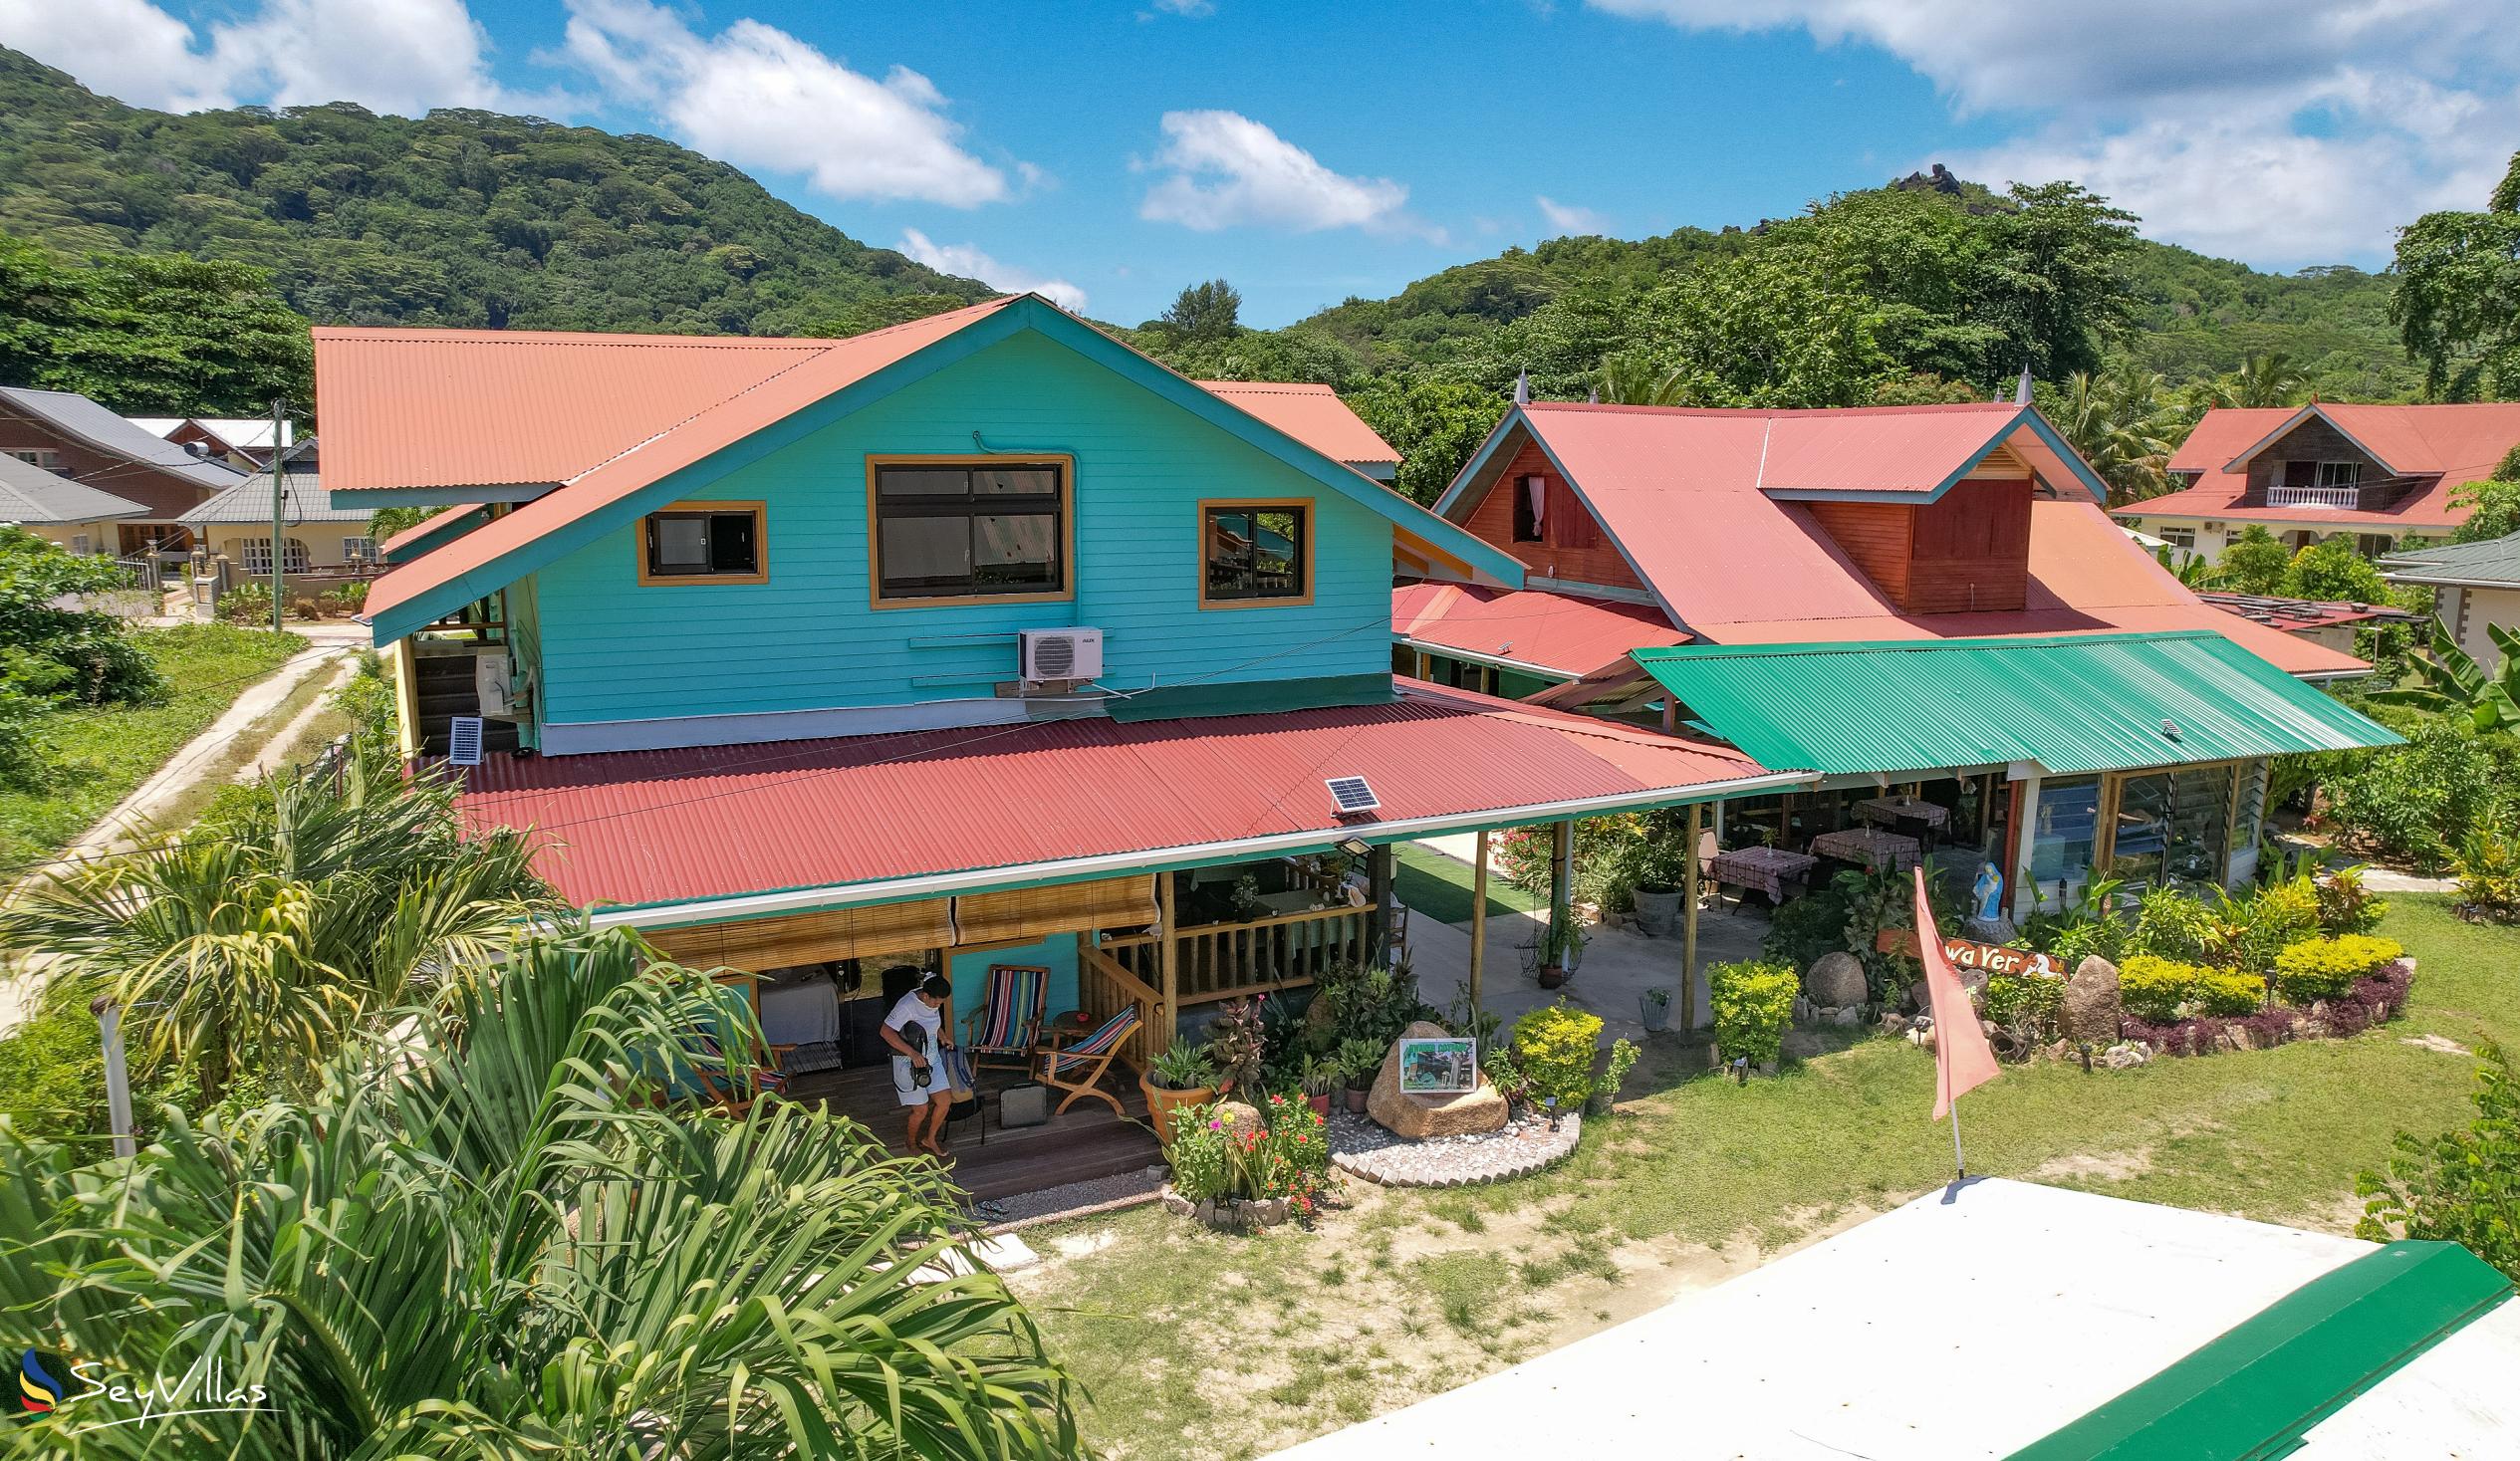 Photo 15: Bwaver Cottage - Outdoor area - La Digue (Seychelles)